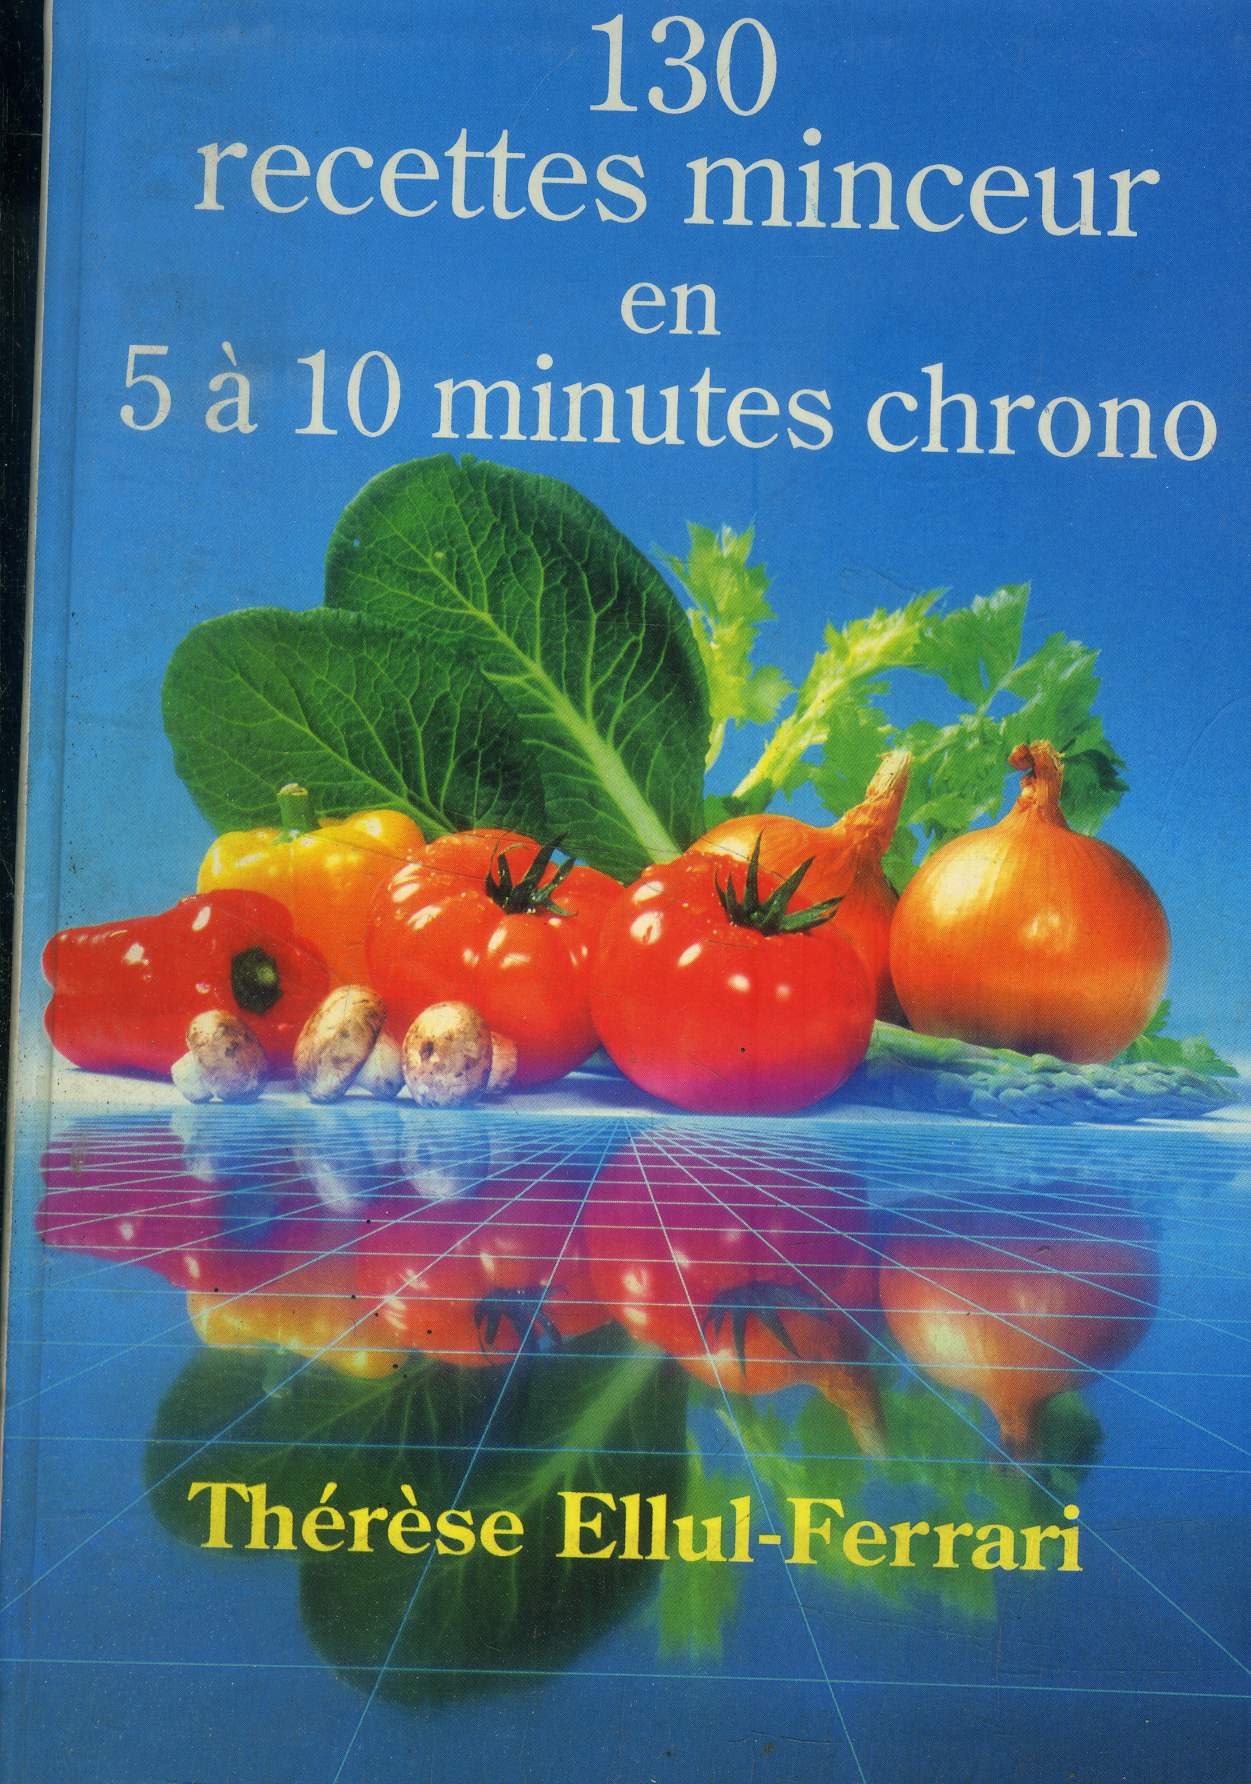 130 recettes minceur en 5  10 minute chrono, de 5  245 calories